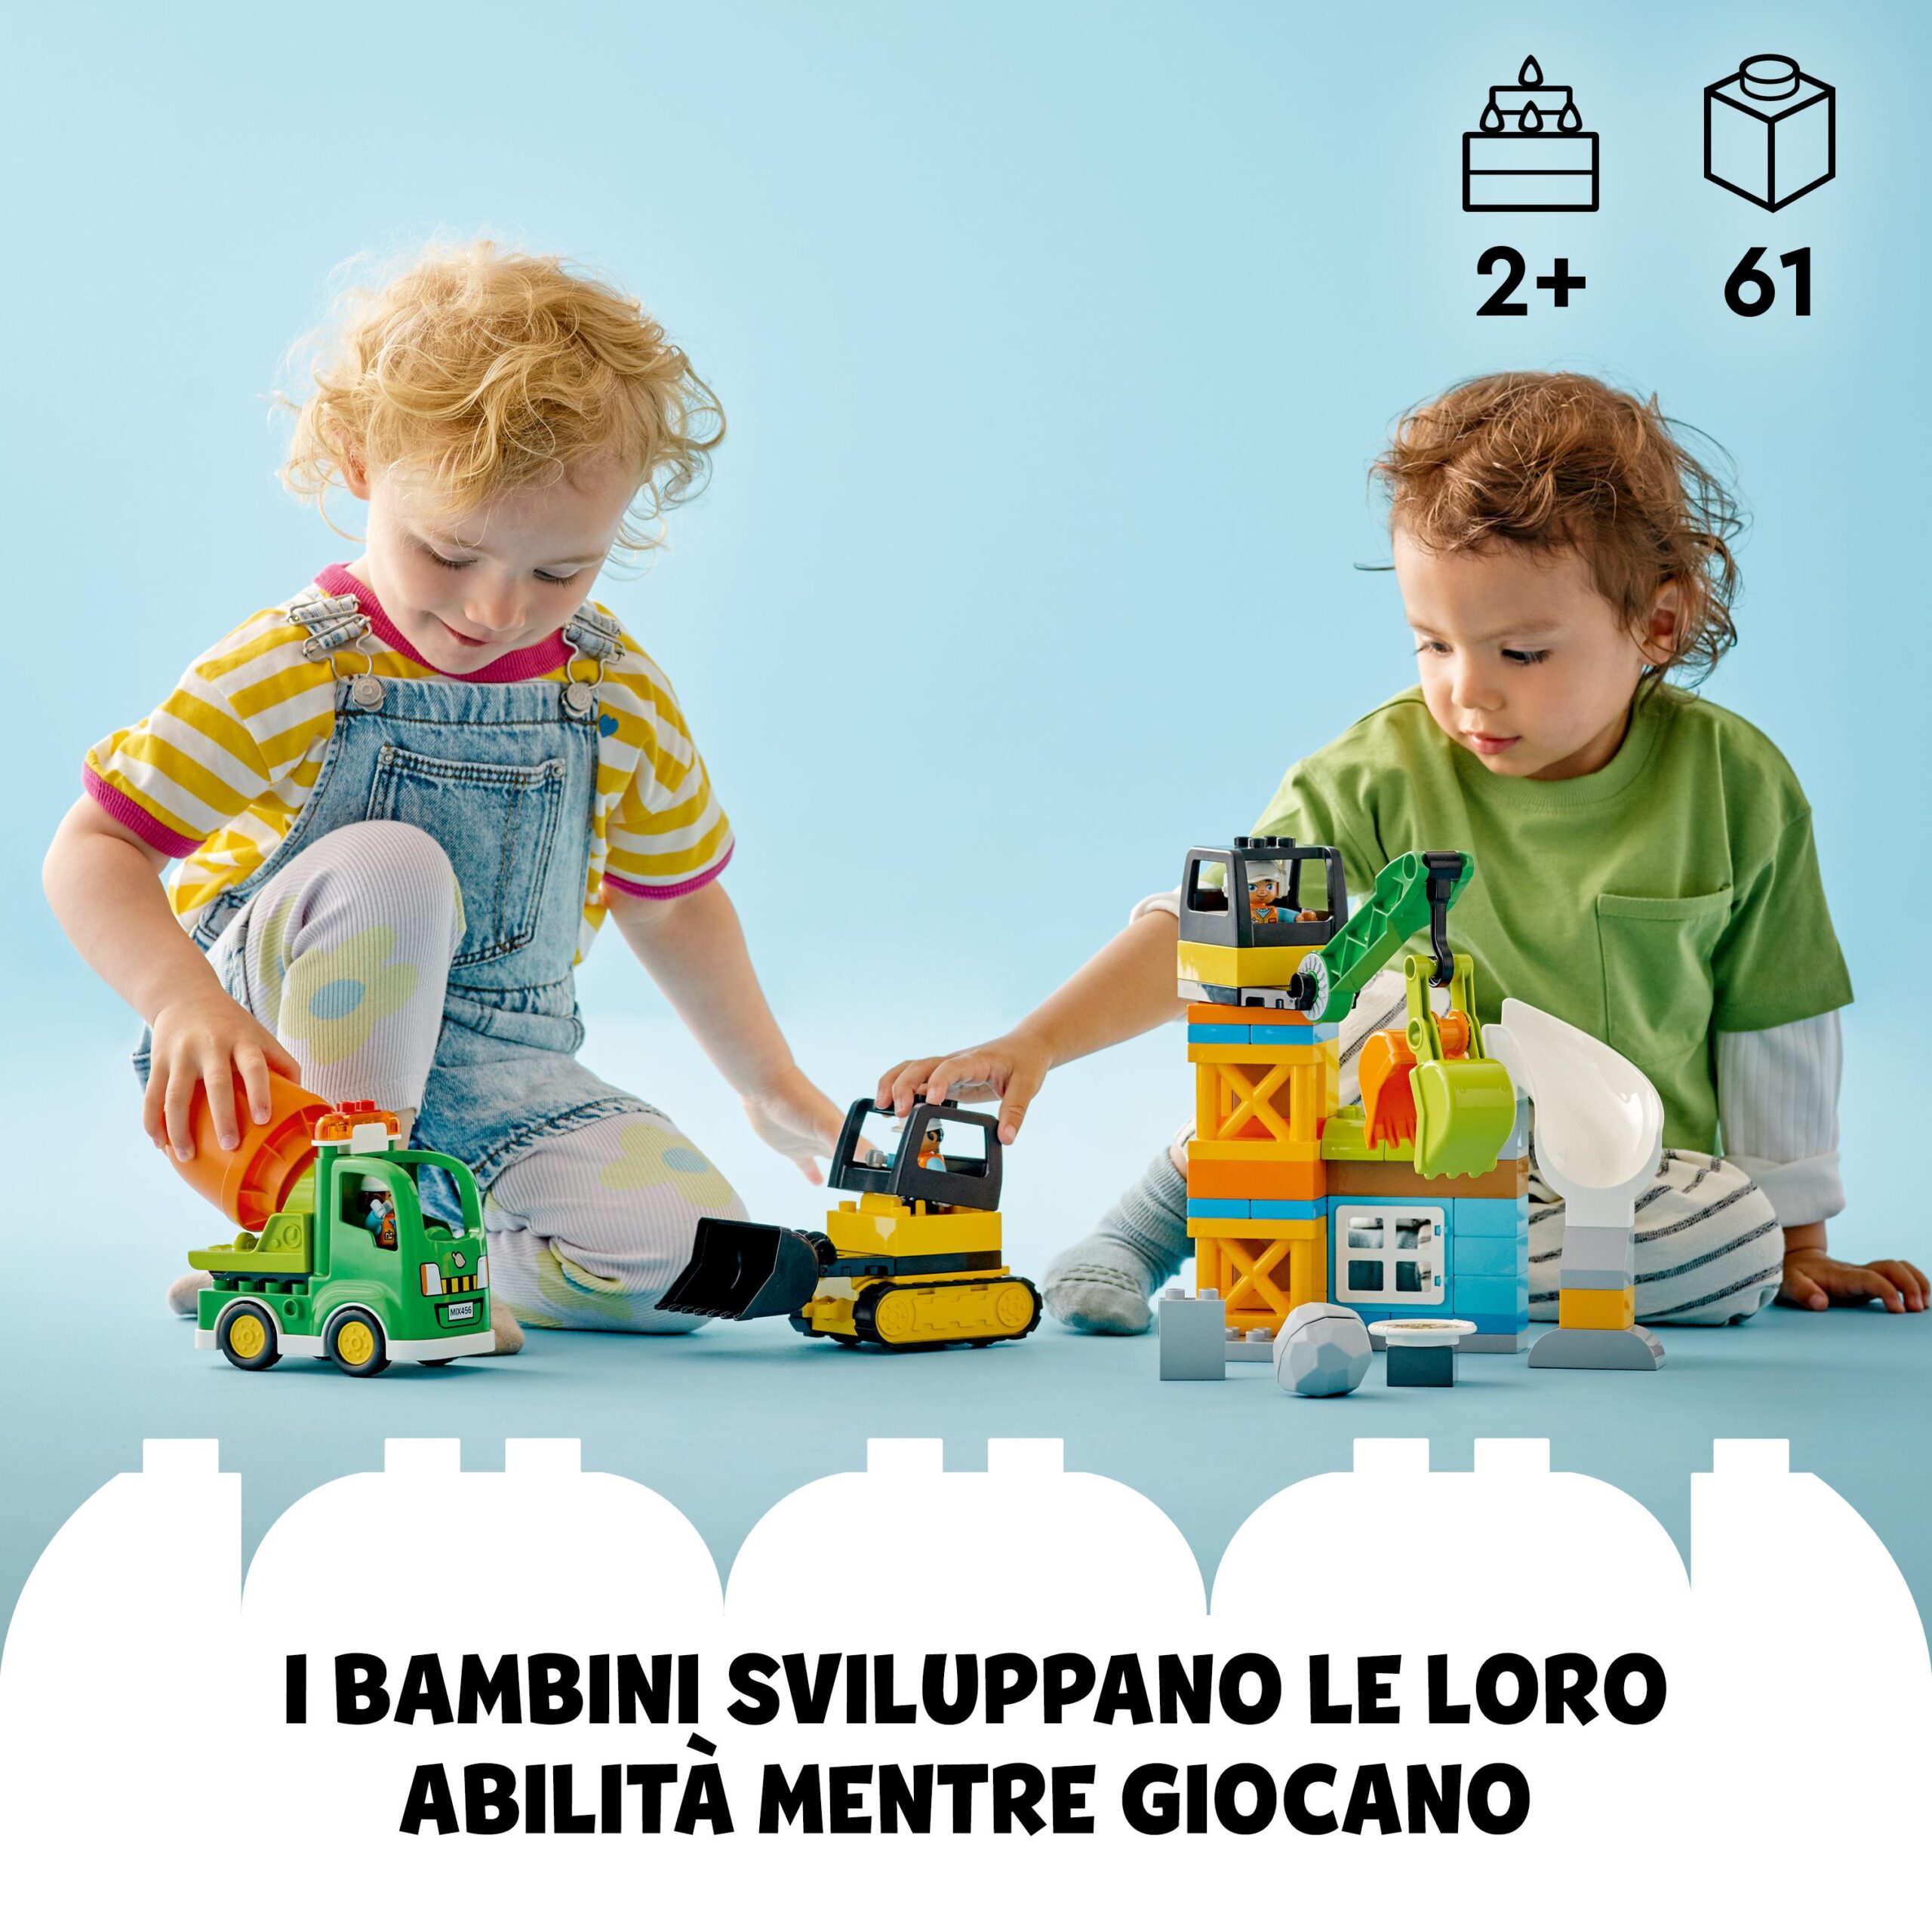 Lego duplo town 10990 cantiere edile con bulldozer, betoniera e gru giocattolo, giocattoli per bambini con mattoncini grandi - LEGO DUPLO